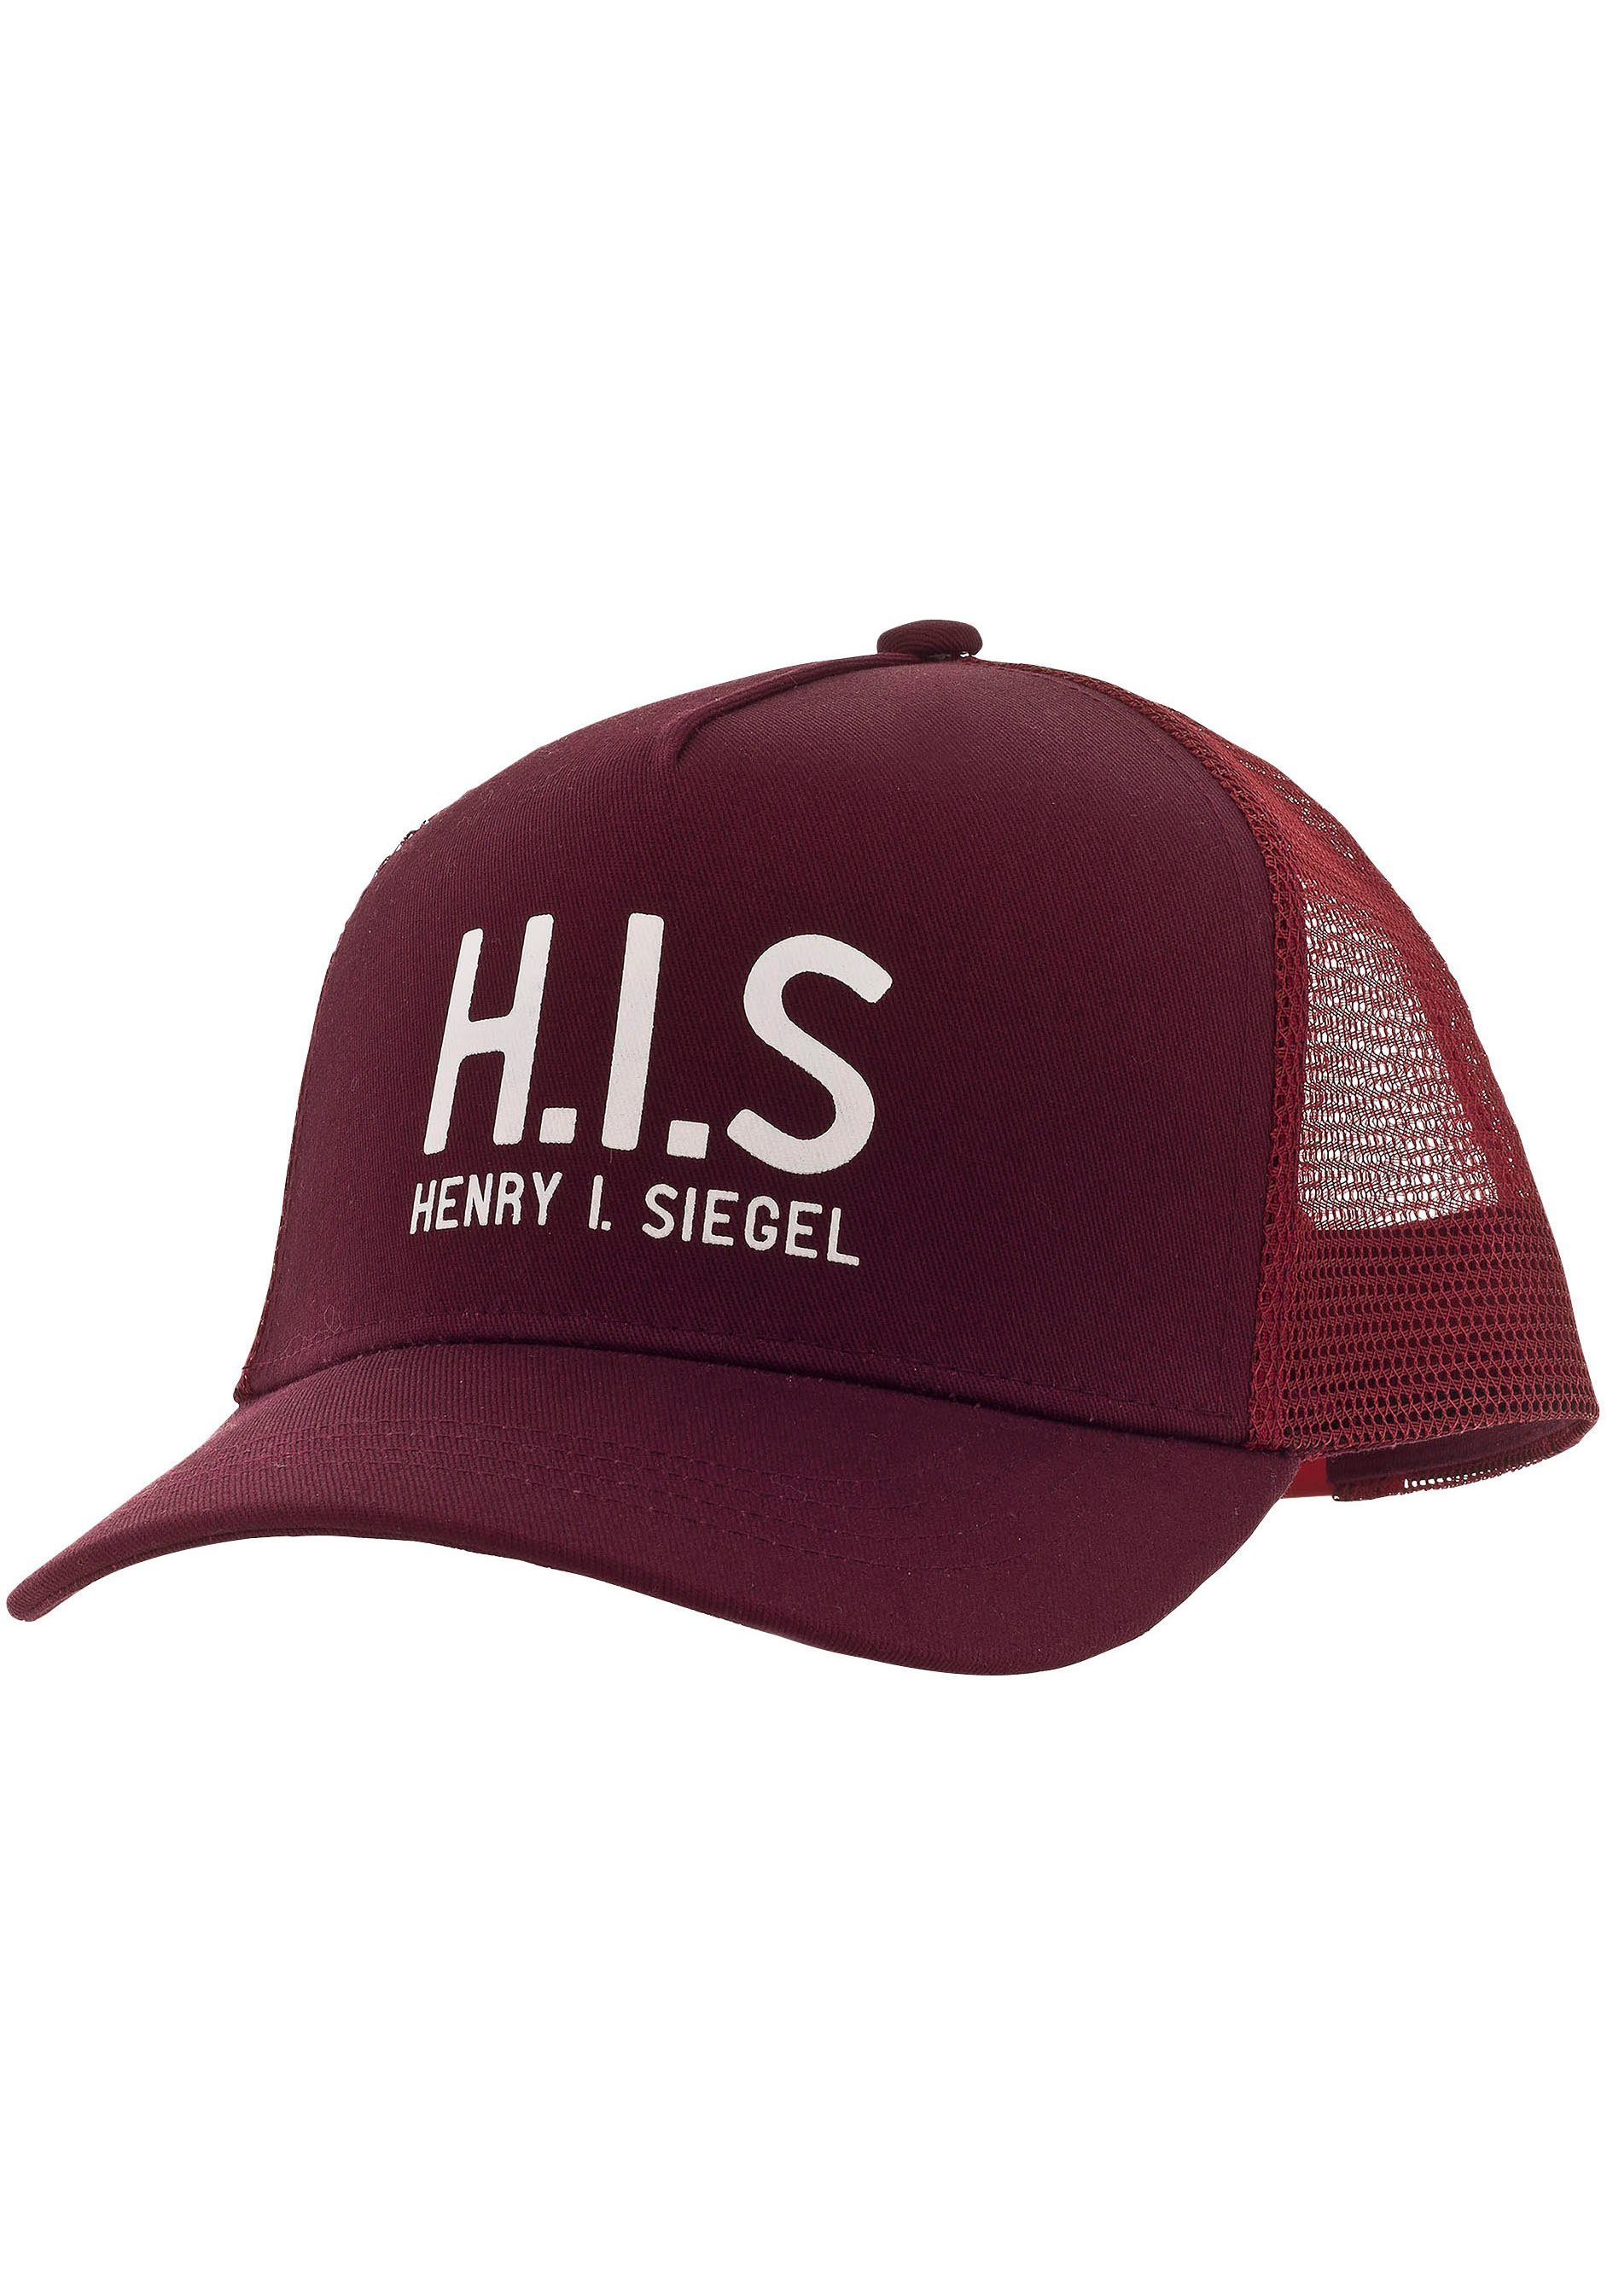 H.I.S Baseball Cap Mesh-Cap mit H.I.S.-Print bordeaux